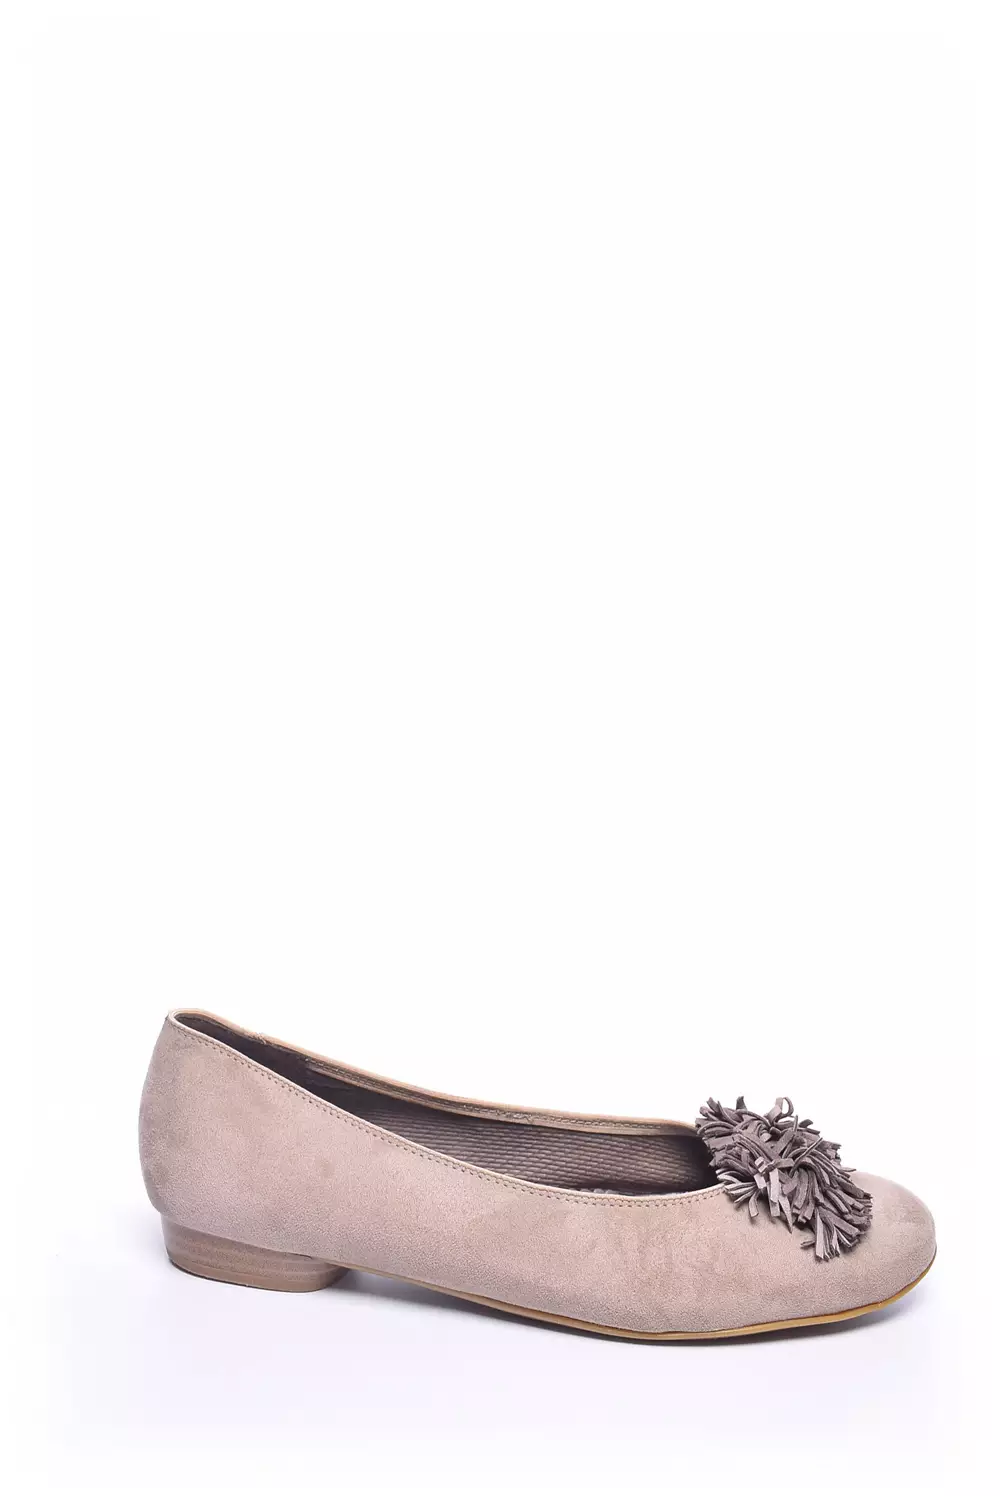 embrace neighbor To contribute Pantofi damă second hand & outlet marca Jenny by Ara | Descoperă stilul tău  - shoemix.ro